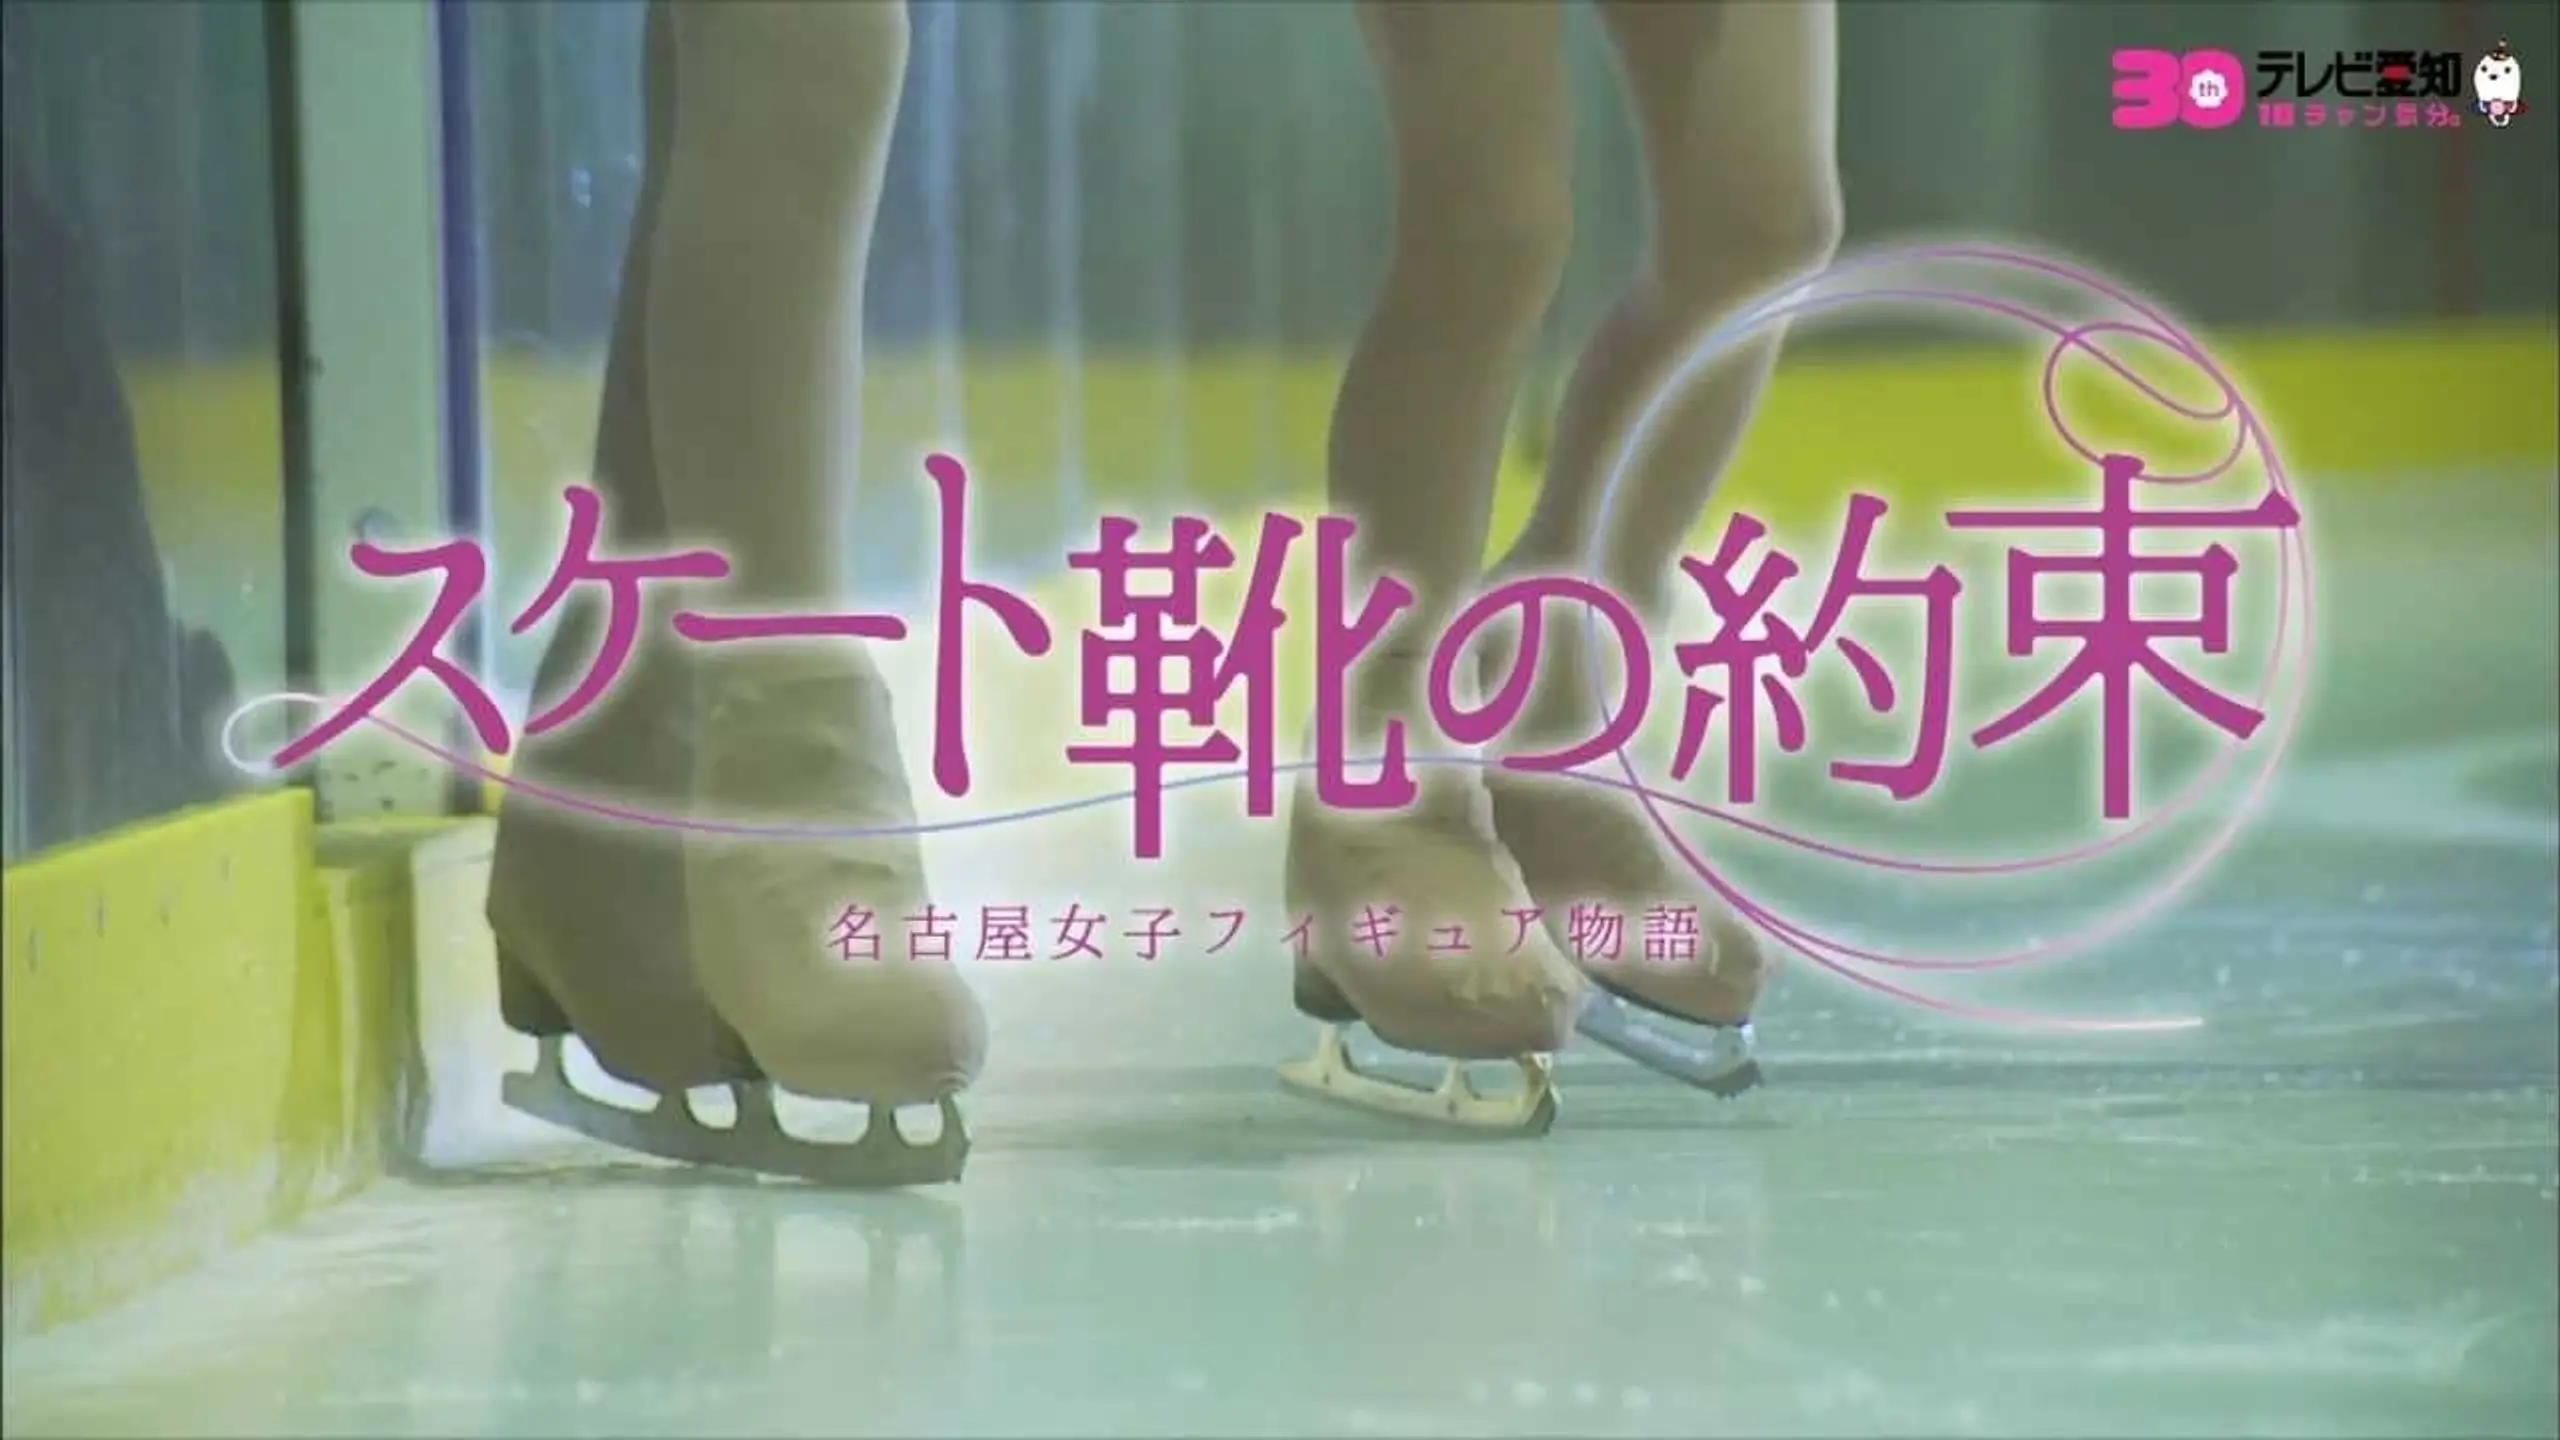 スケート靴の約束 ~名古屋女子フィギュア物語~